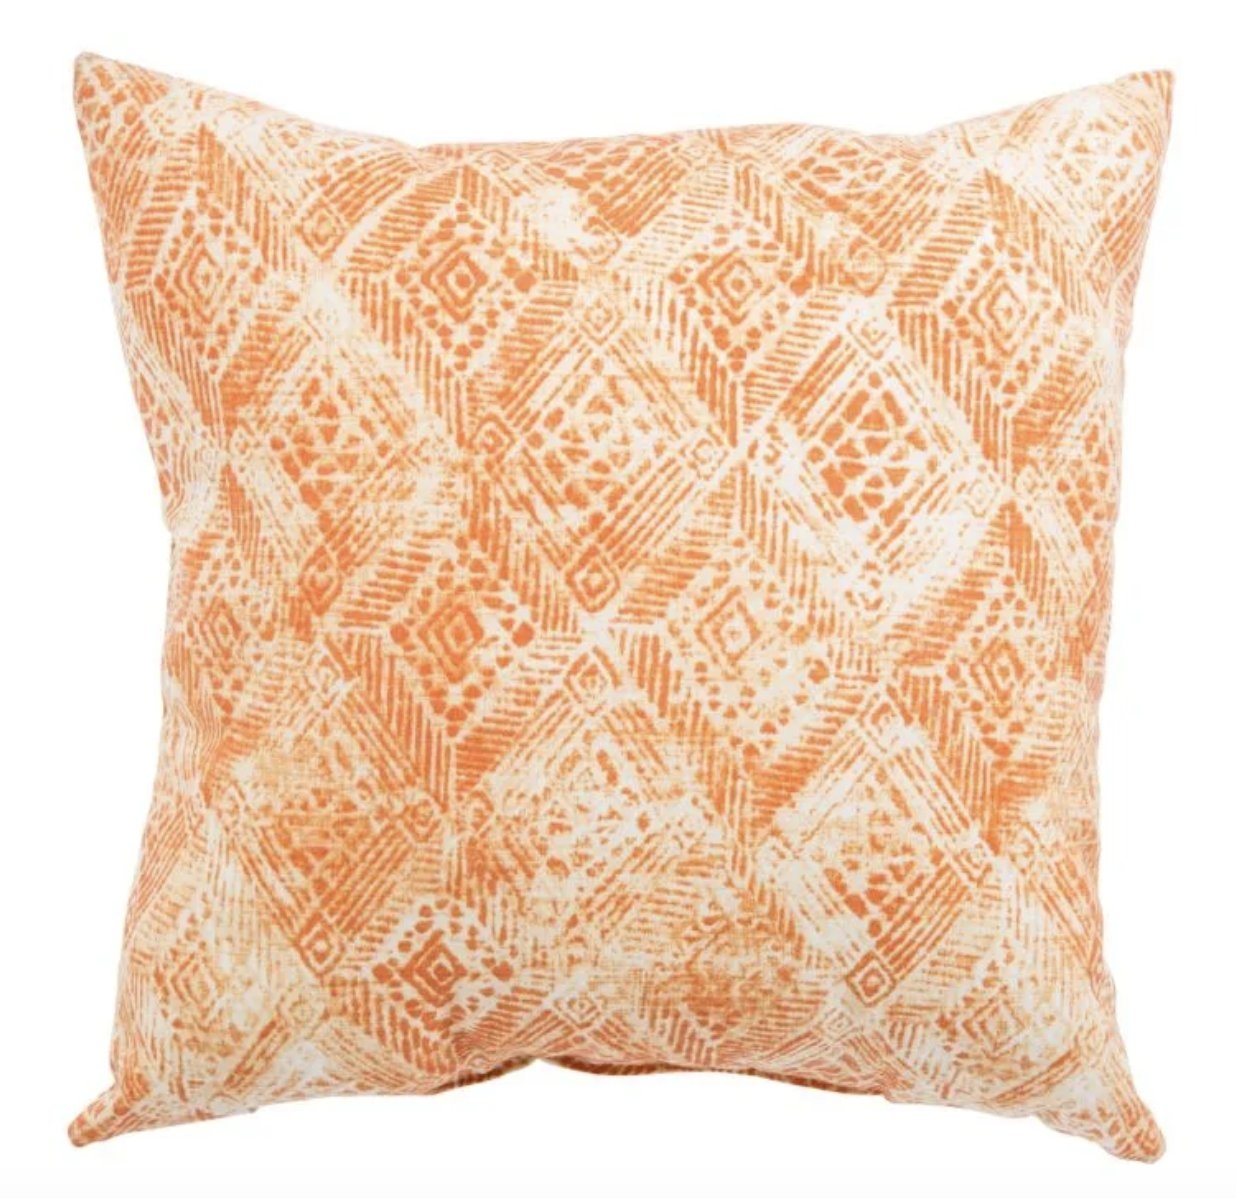 Design (US) orange 20"X20" Pillow - Image 1